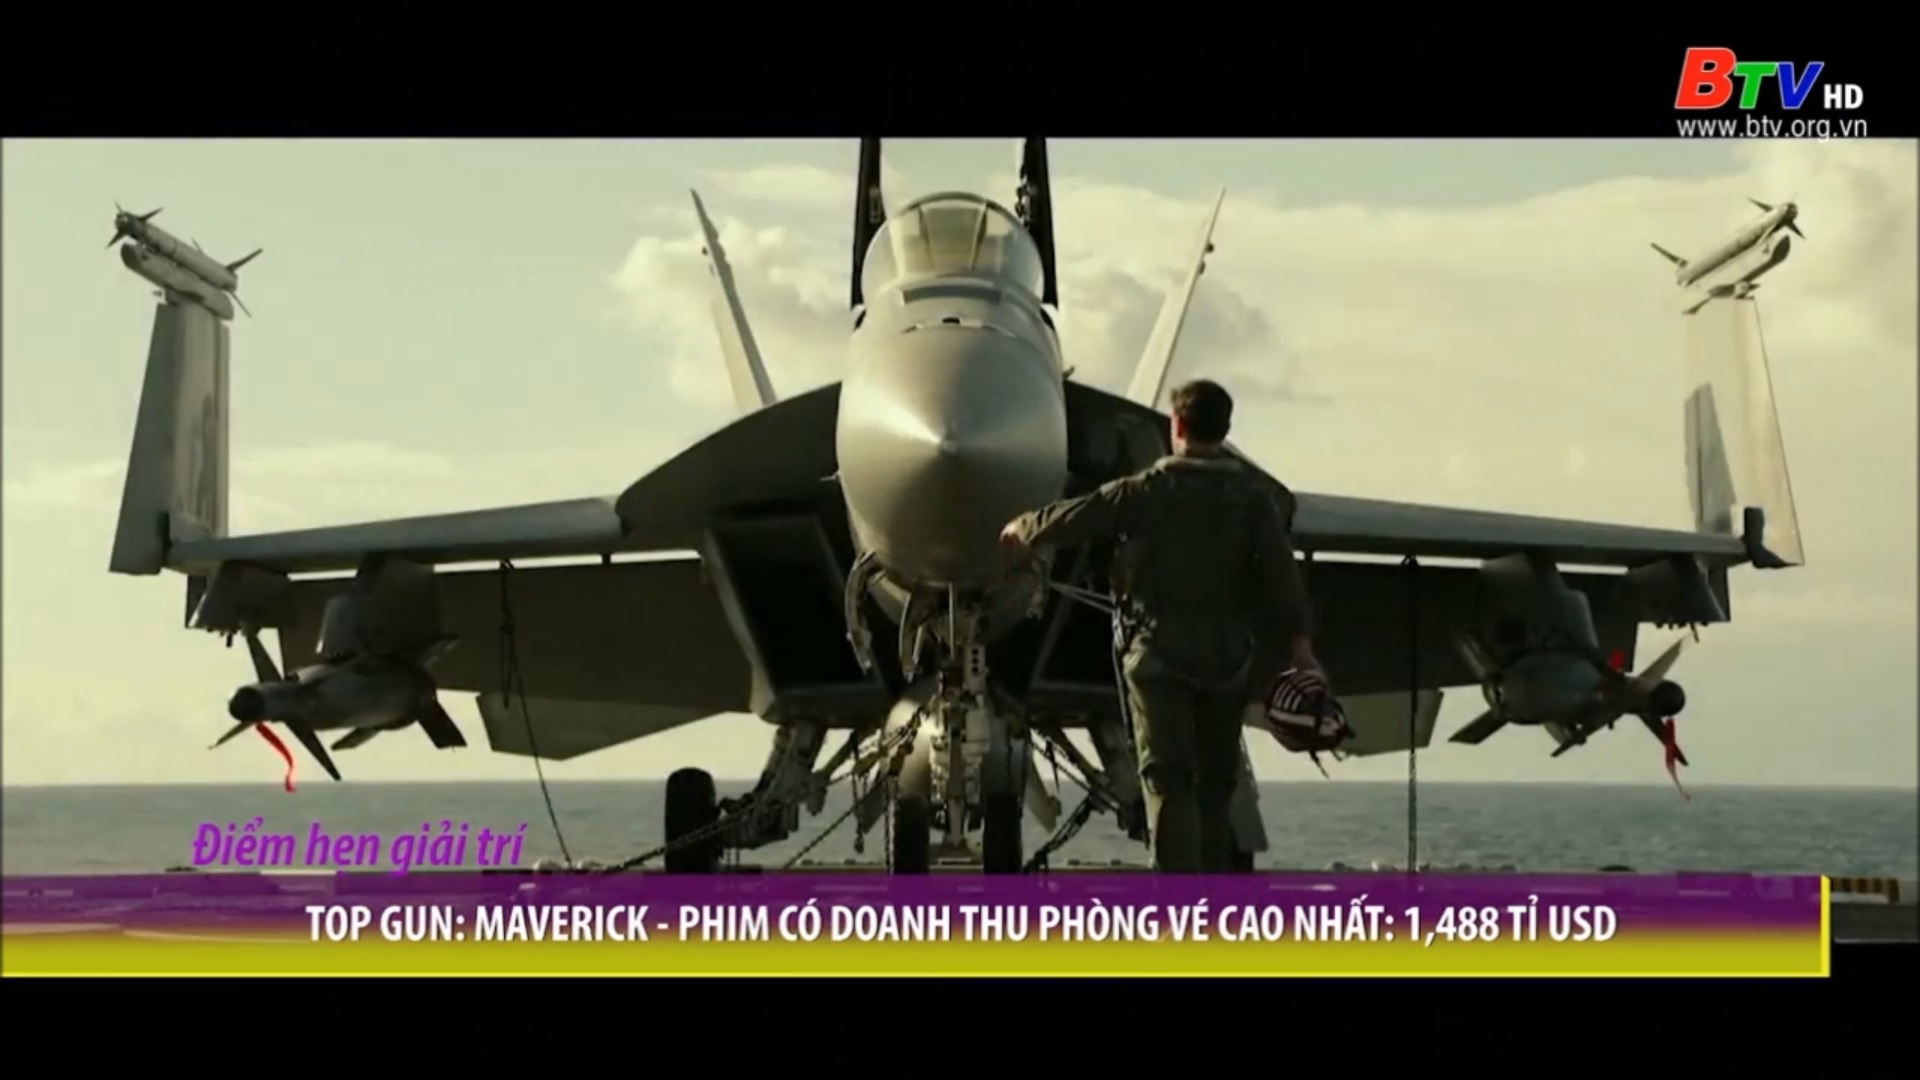 Top Gun: Maverick – Phim có doanh thu phòng vé cao nhất 1,488 tỷ USD